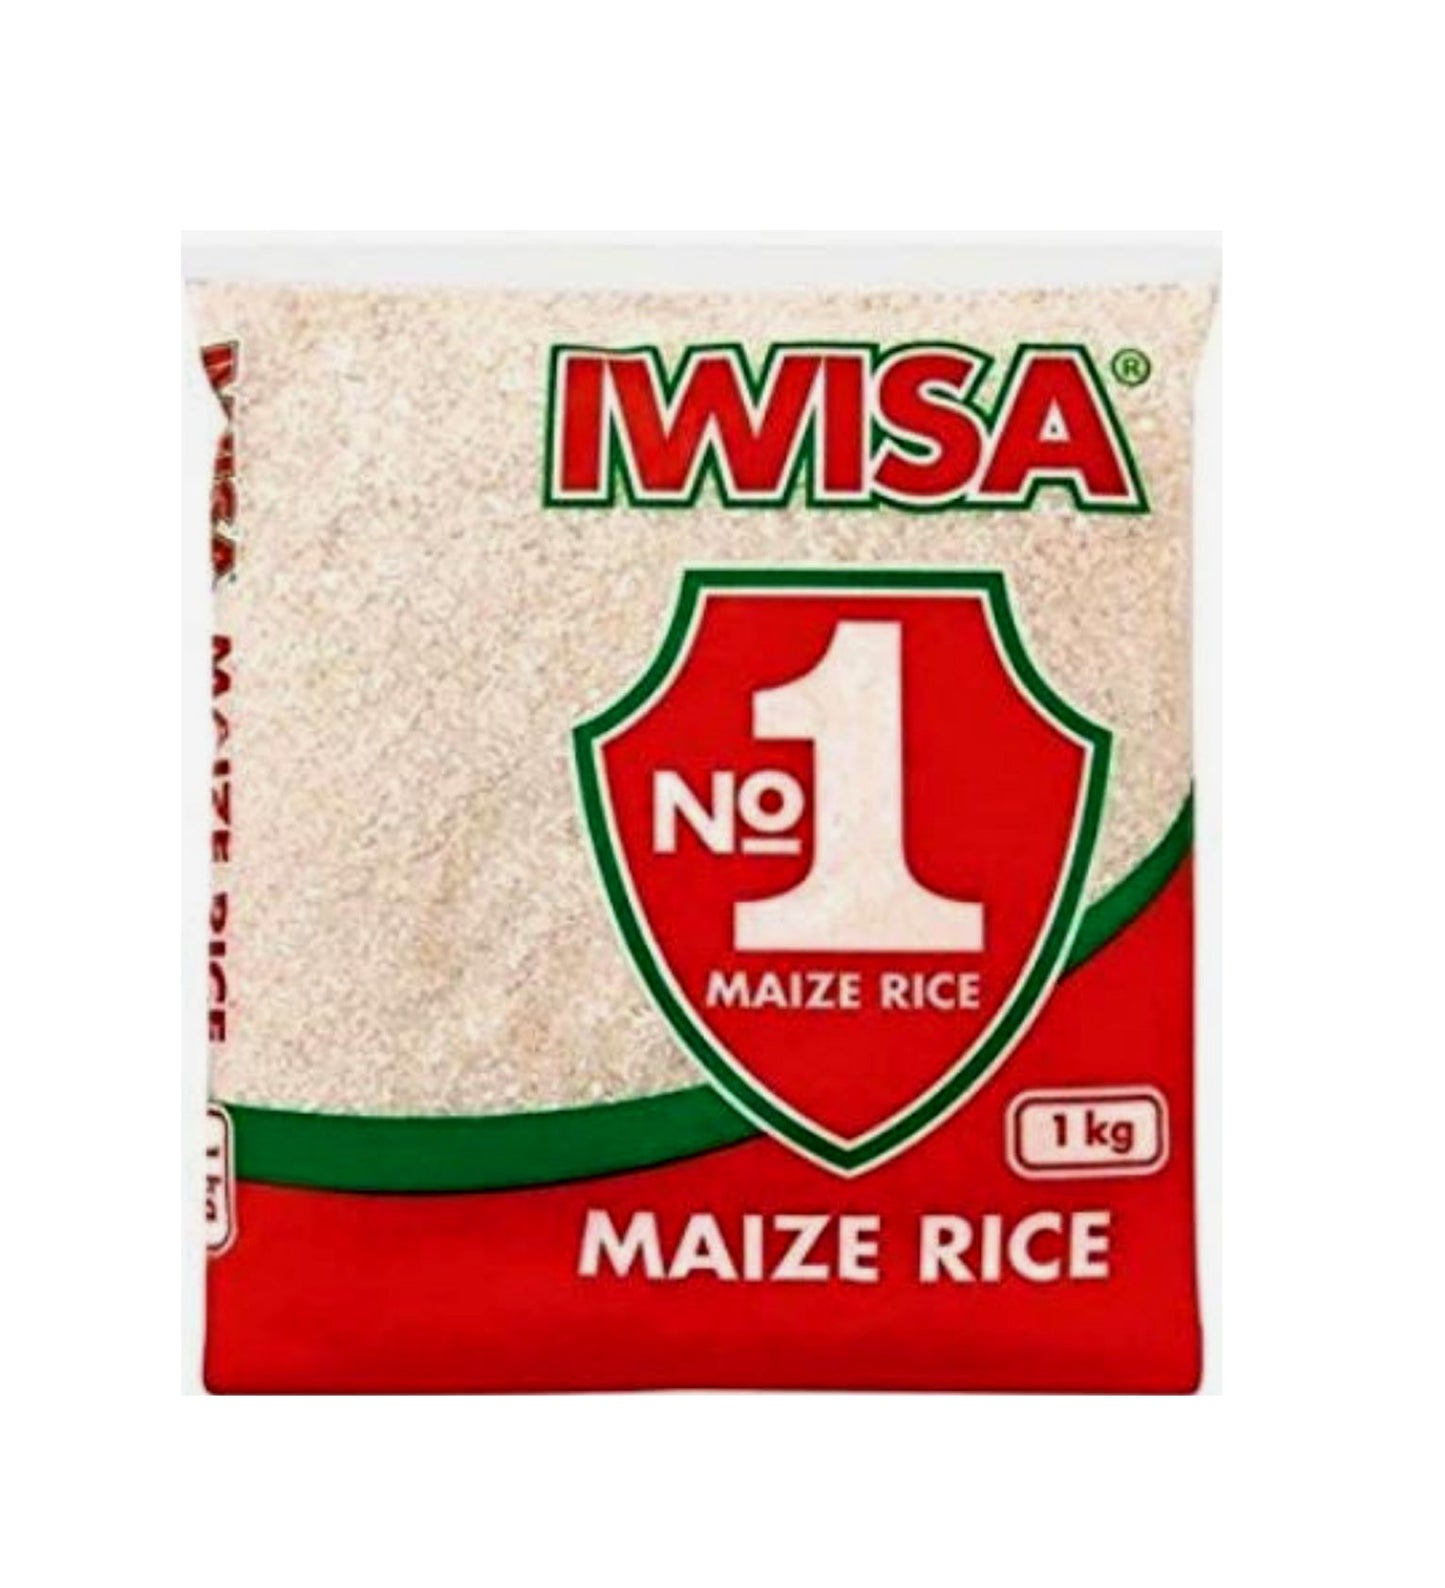 Iwisa Maize Rice 1kg Box of 10